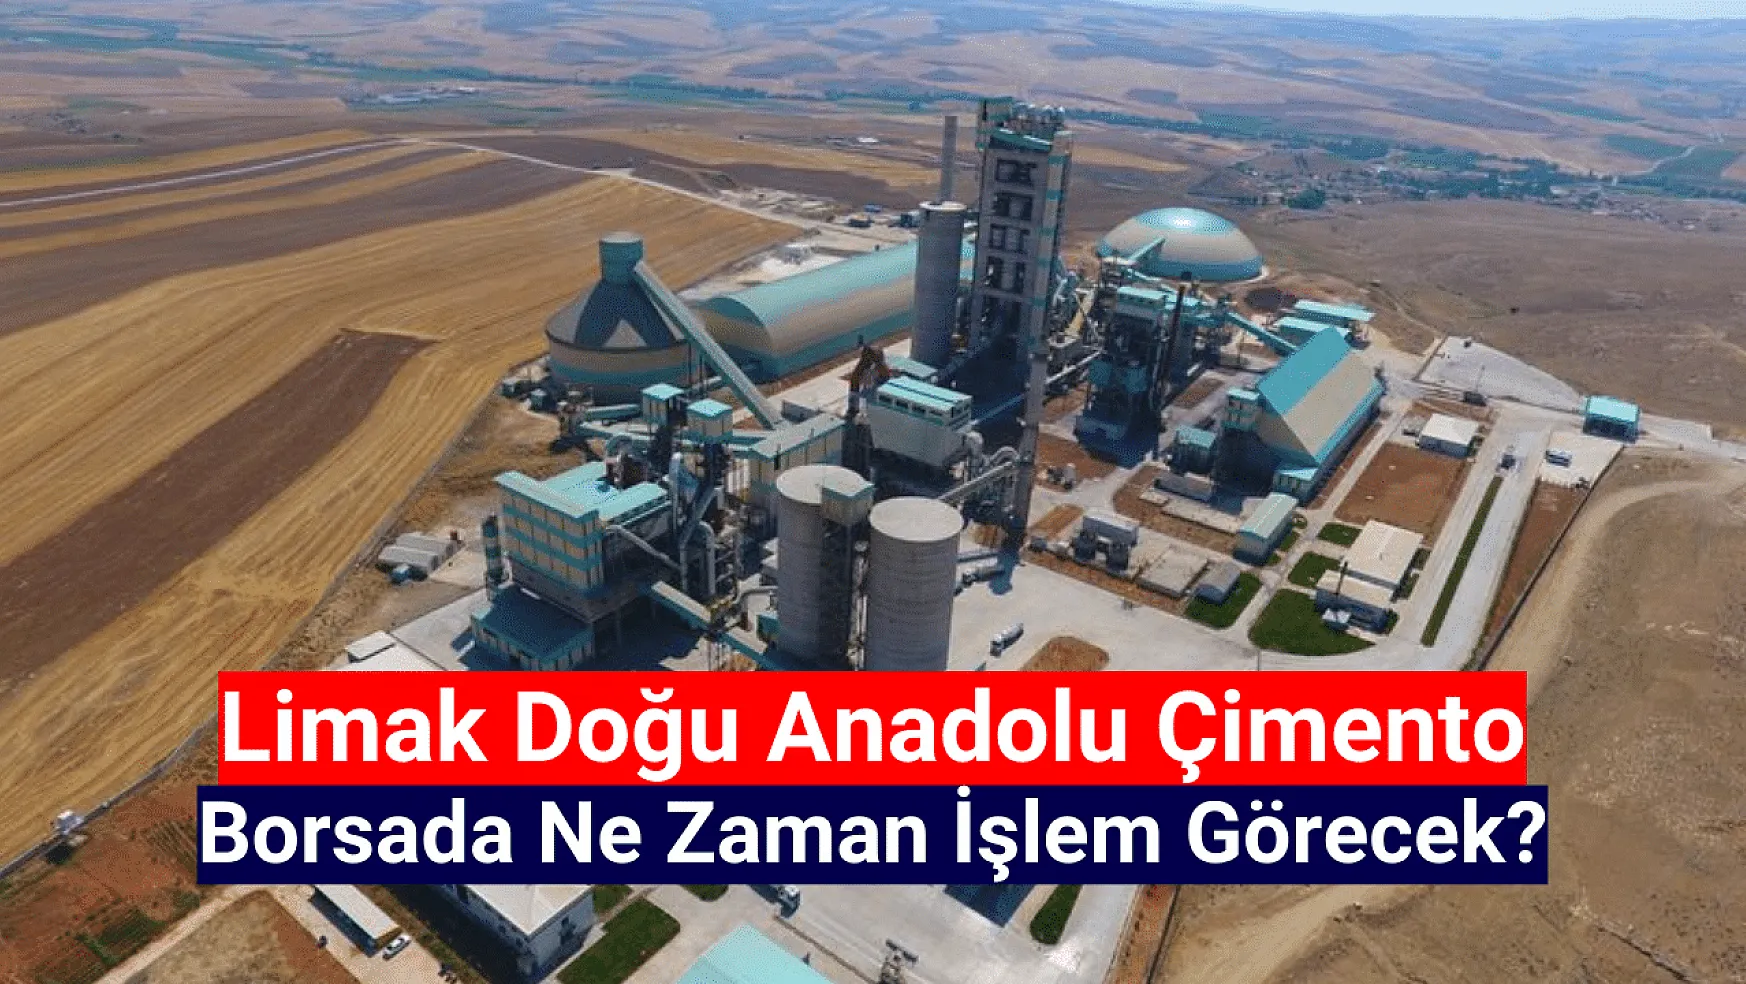 Limak Doğu Anadolu Çimento (LMKDC) halka arz sonuçları ne zaman açıklanacak?